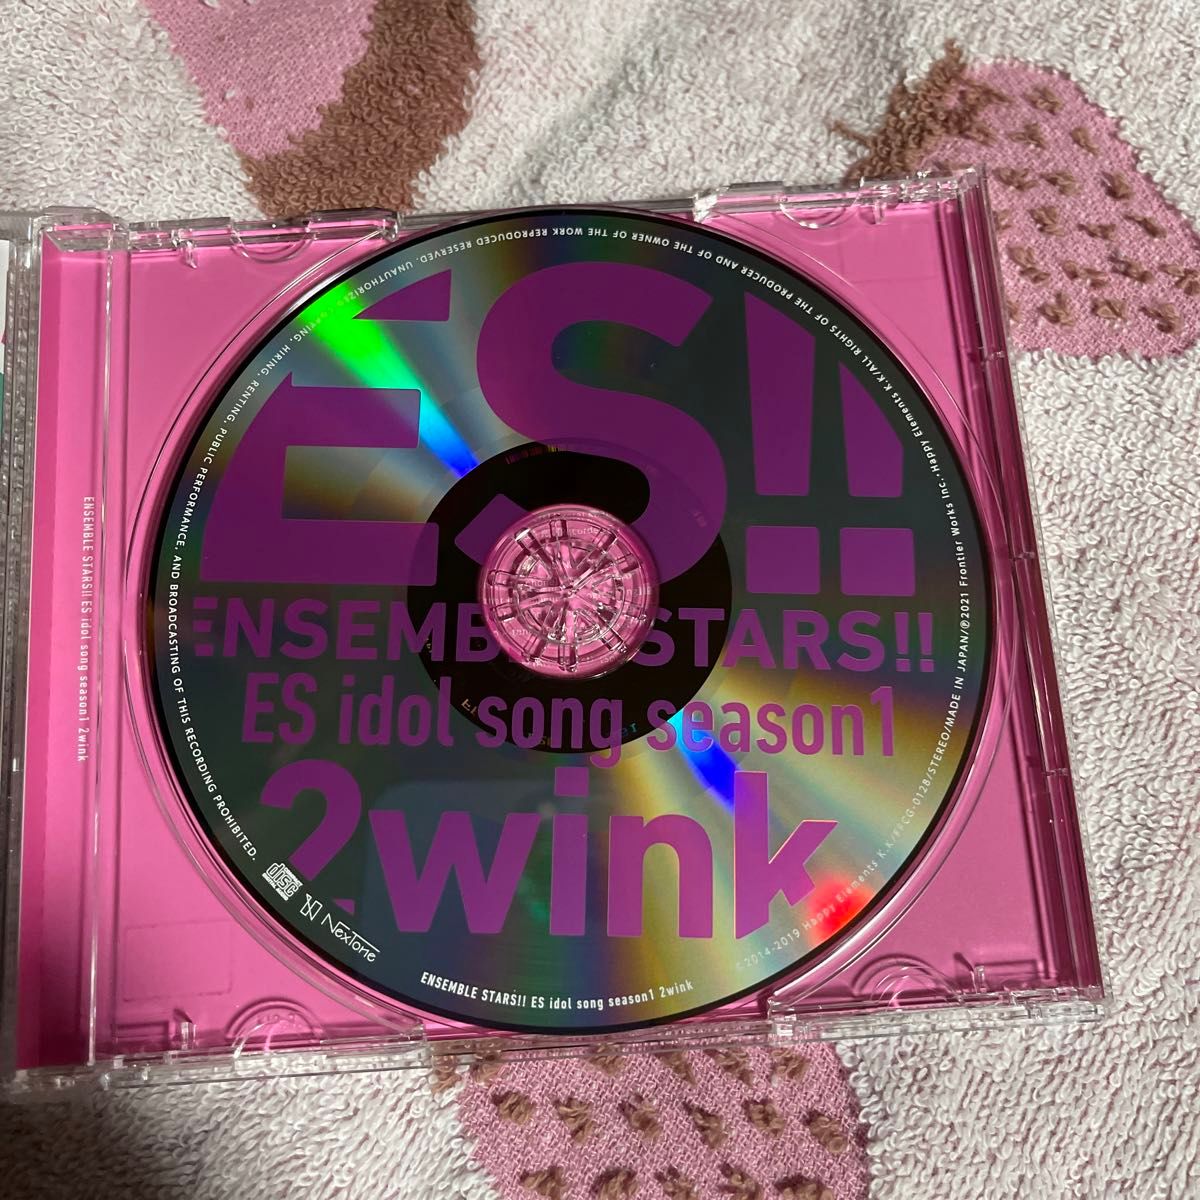 【合わせ買い不可】 あんさんぶるスターズ!! ESアイドルソング season1 2wink CD 2wink